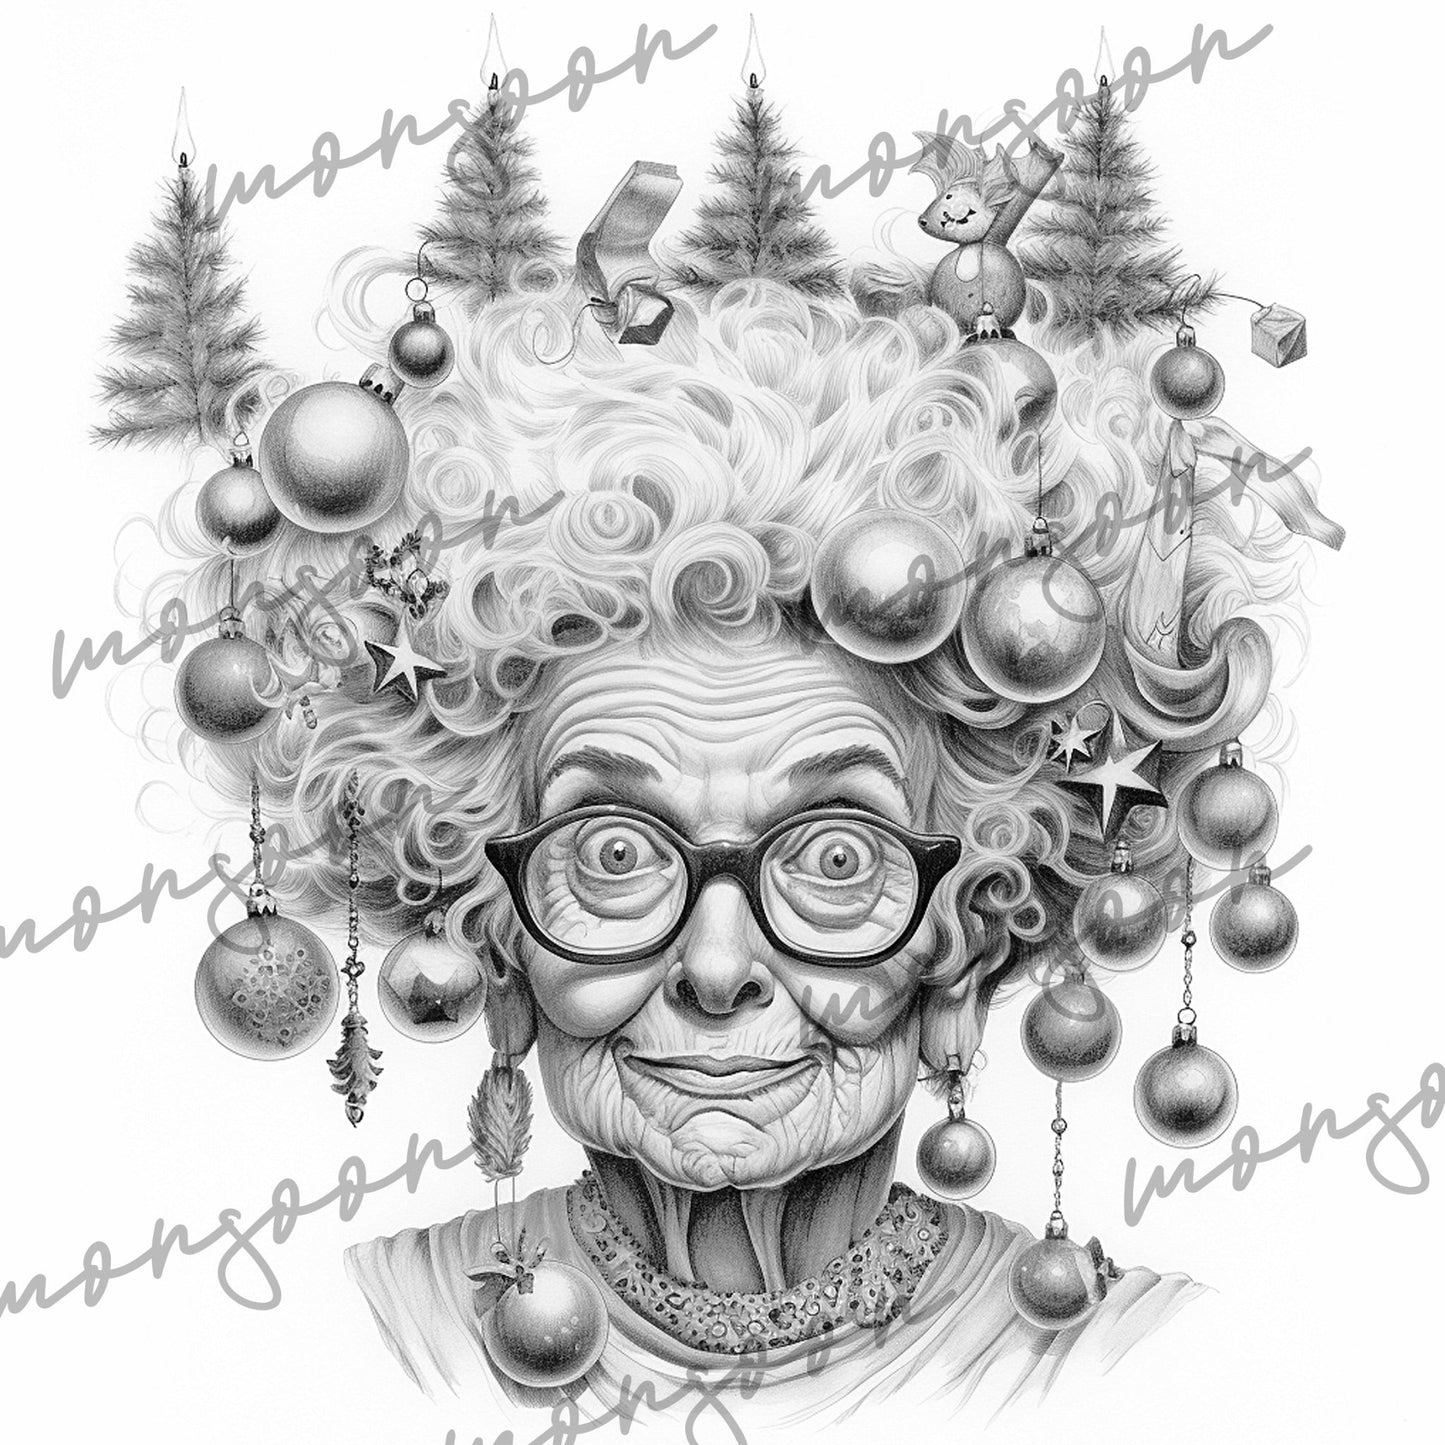 Crazy Grandma on Christmas Coloring Book (Printbook) - Monsoon Publishing USA